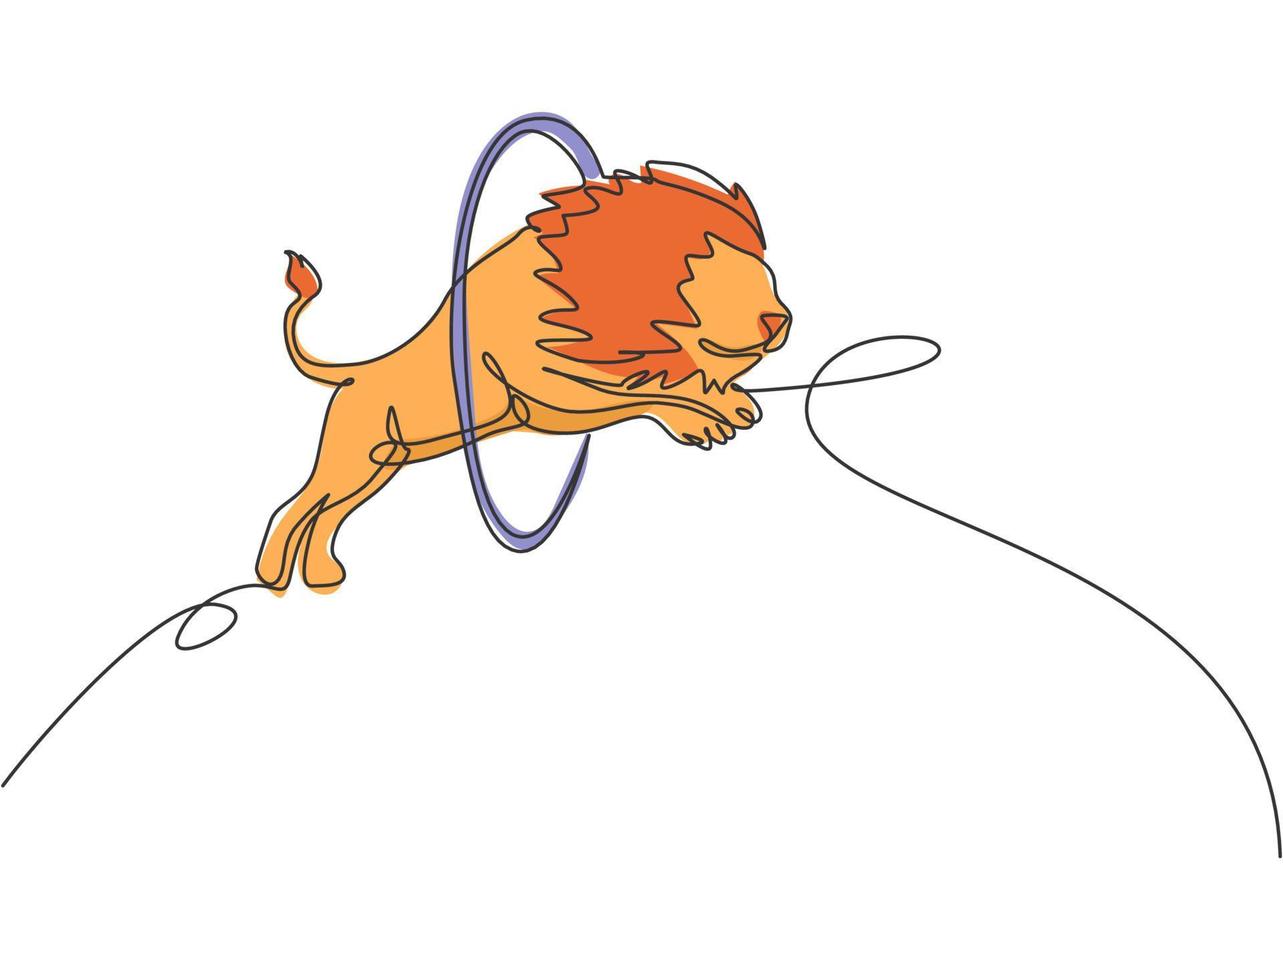 dibujo de una sola línea de un león saltando al círculo en un espectáculo de circo. el entrenador está observando atentamente. concepto de espectáculo de circo exitoso. Ilustración de vector gráfico de diseño de dibujo de línea continua.